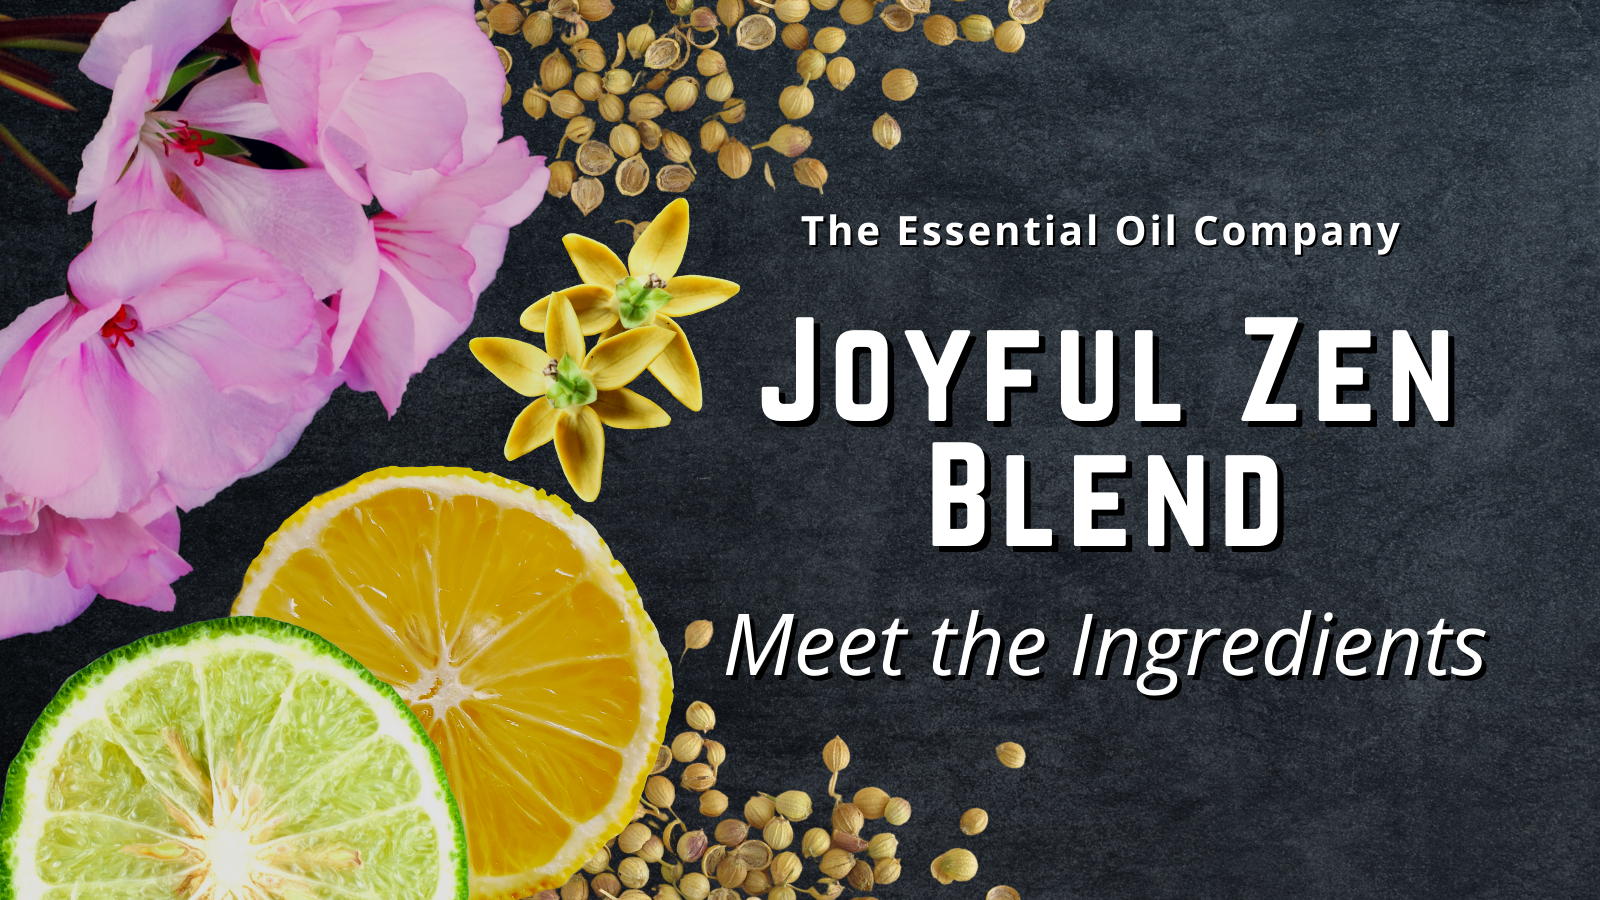 Joyful Zen Blend: Meet the Ingredients